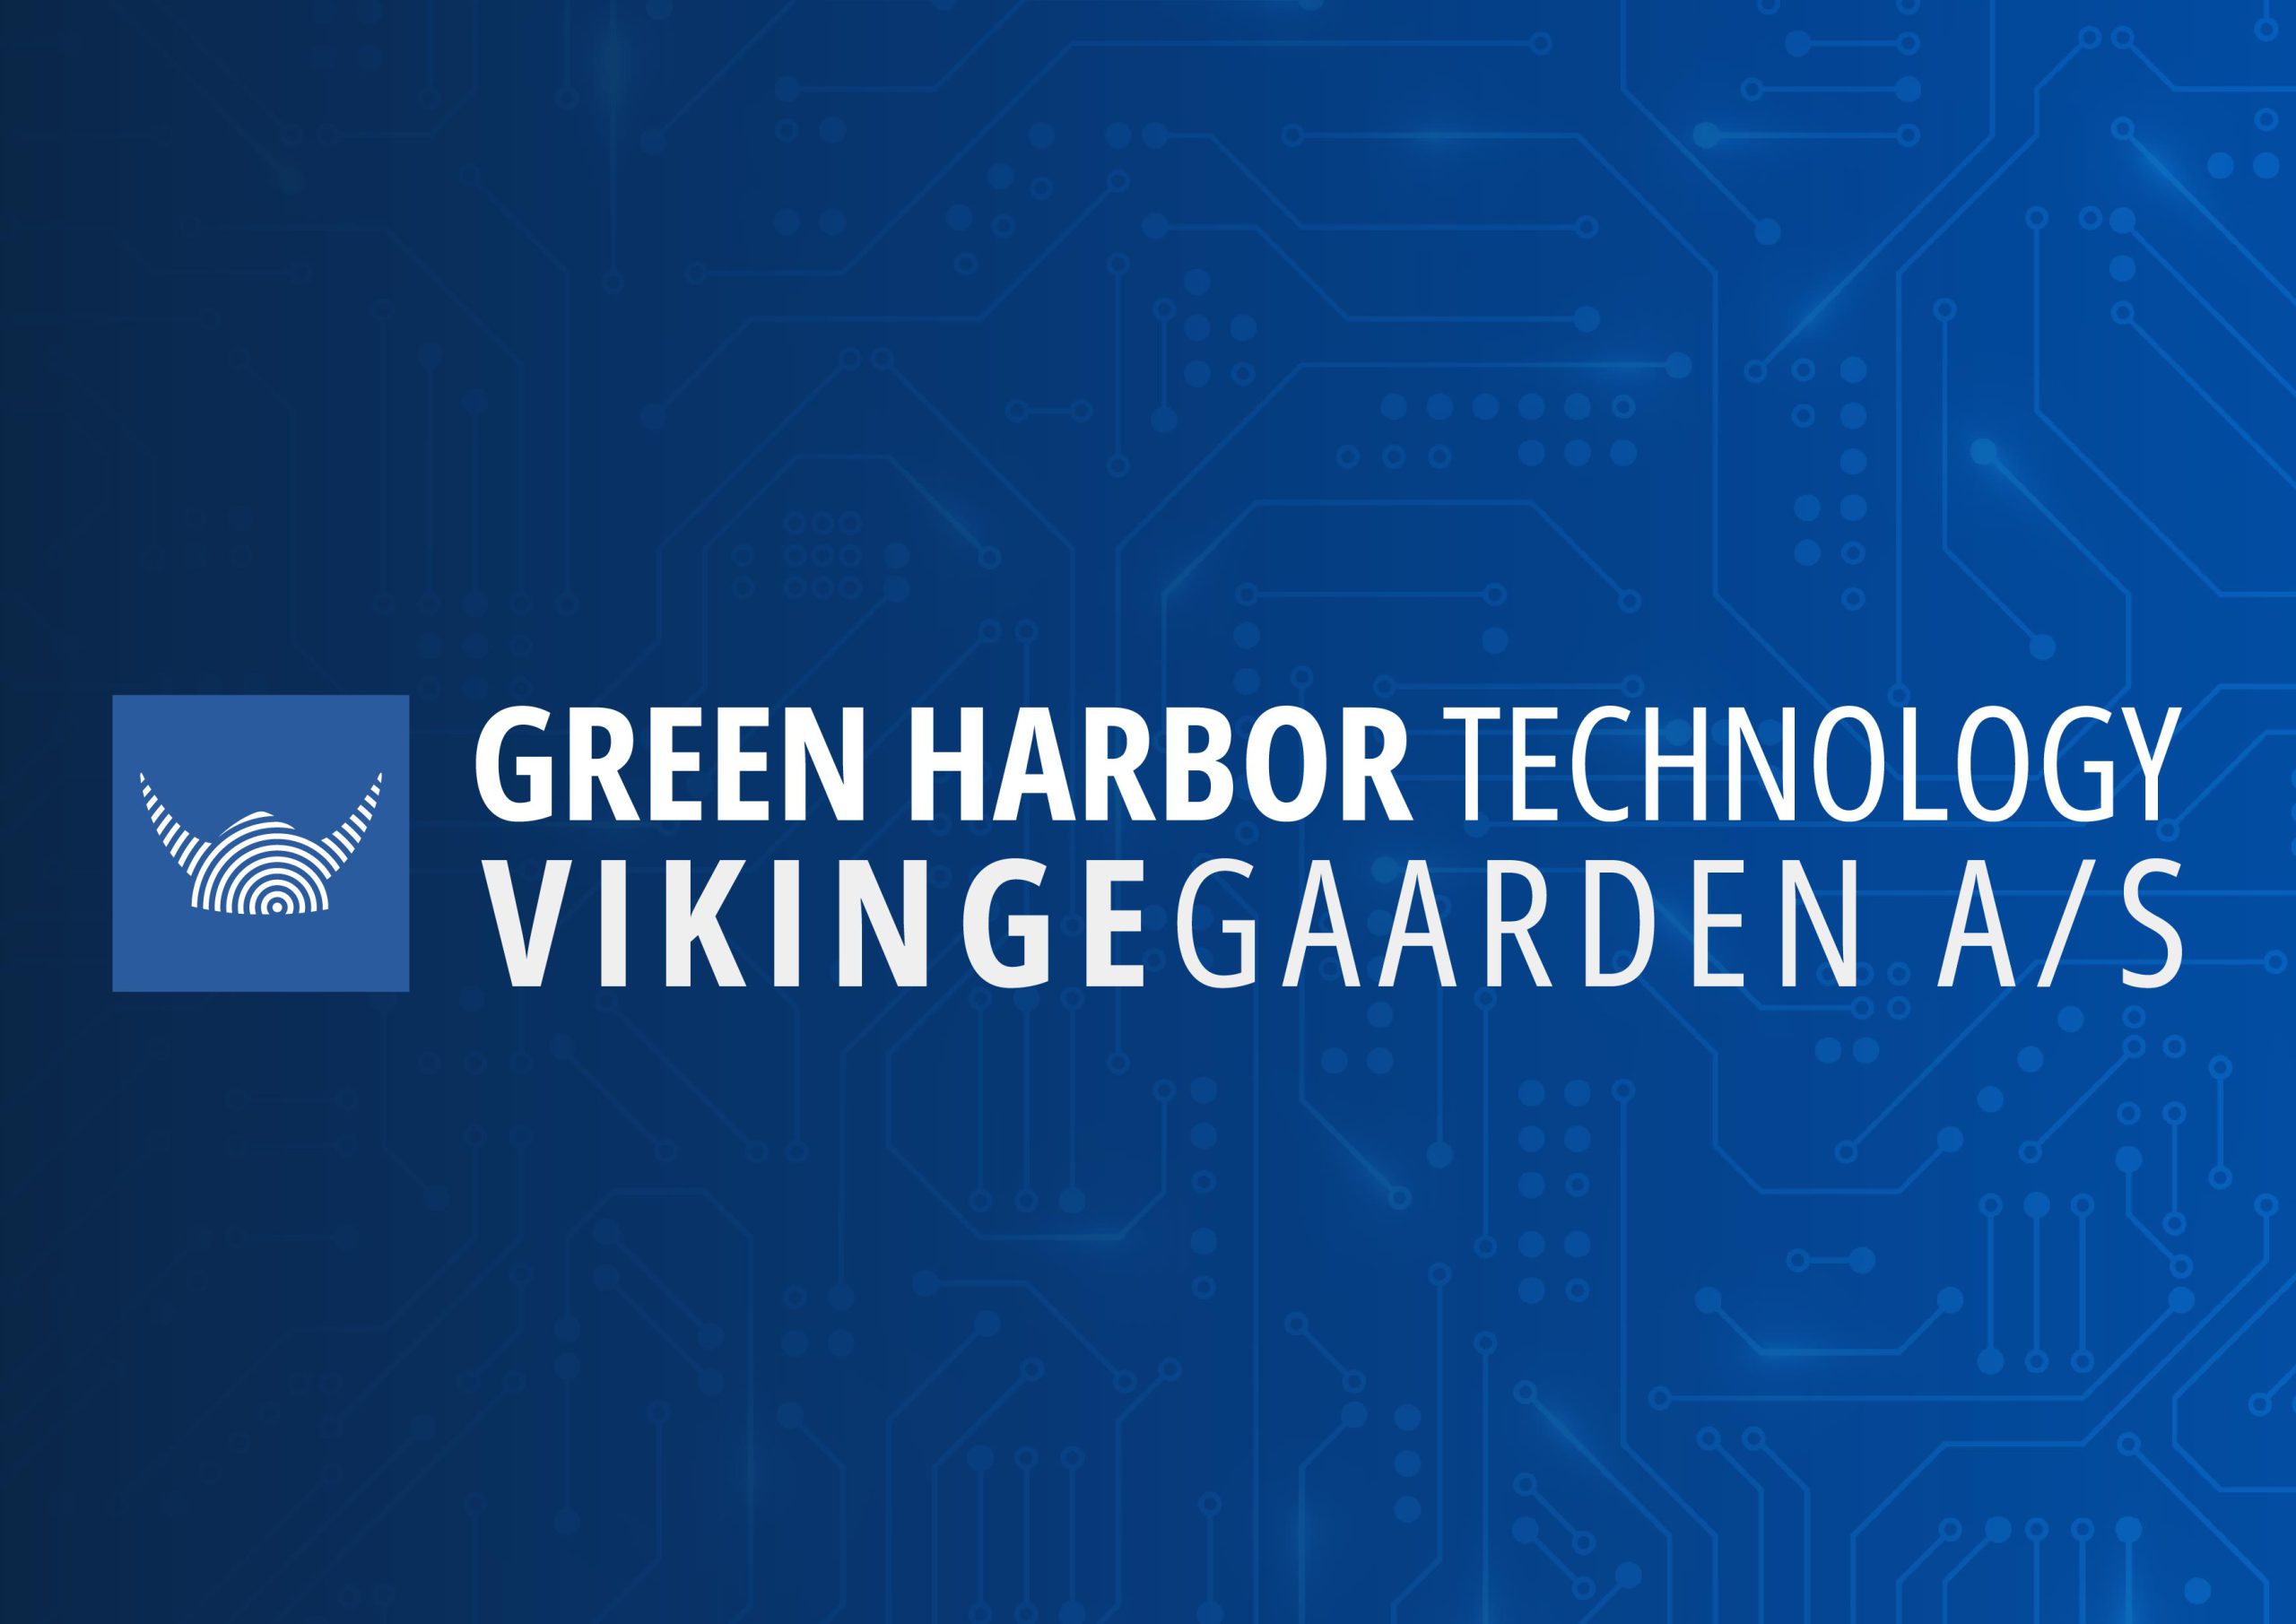 Vikingegaarden A/S została zatwierdzona jako członek stowarzyszony Danske Havne